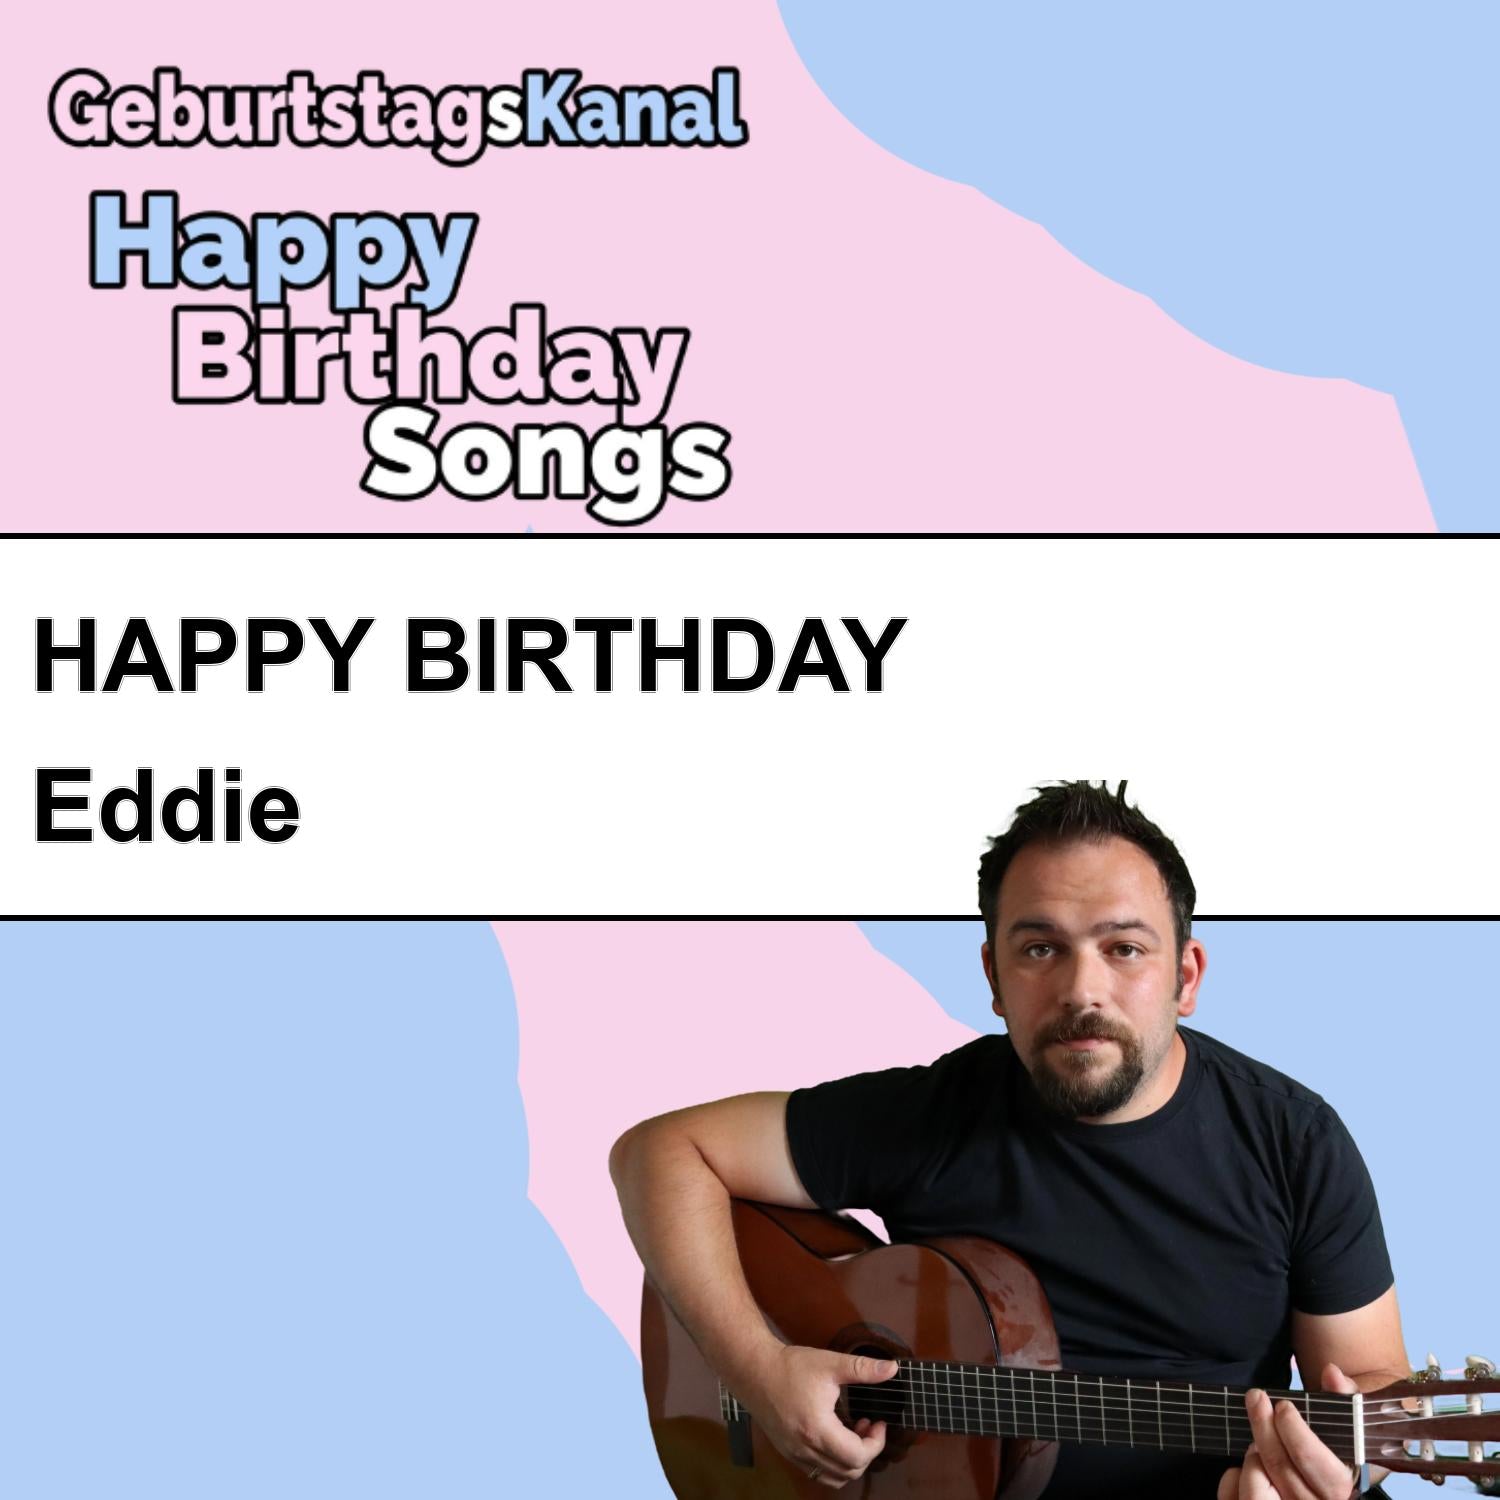 Produktbild Happy Birthday to you Eddie mit Wunschgrußbotschaft